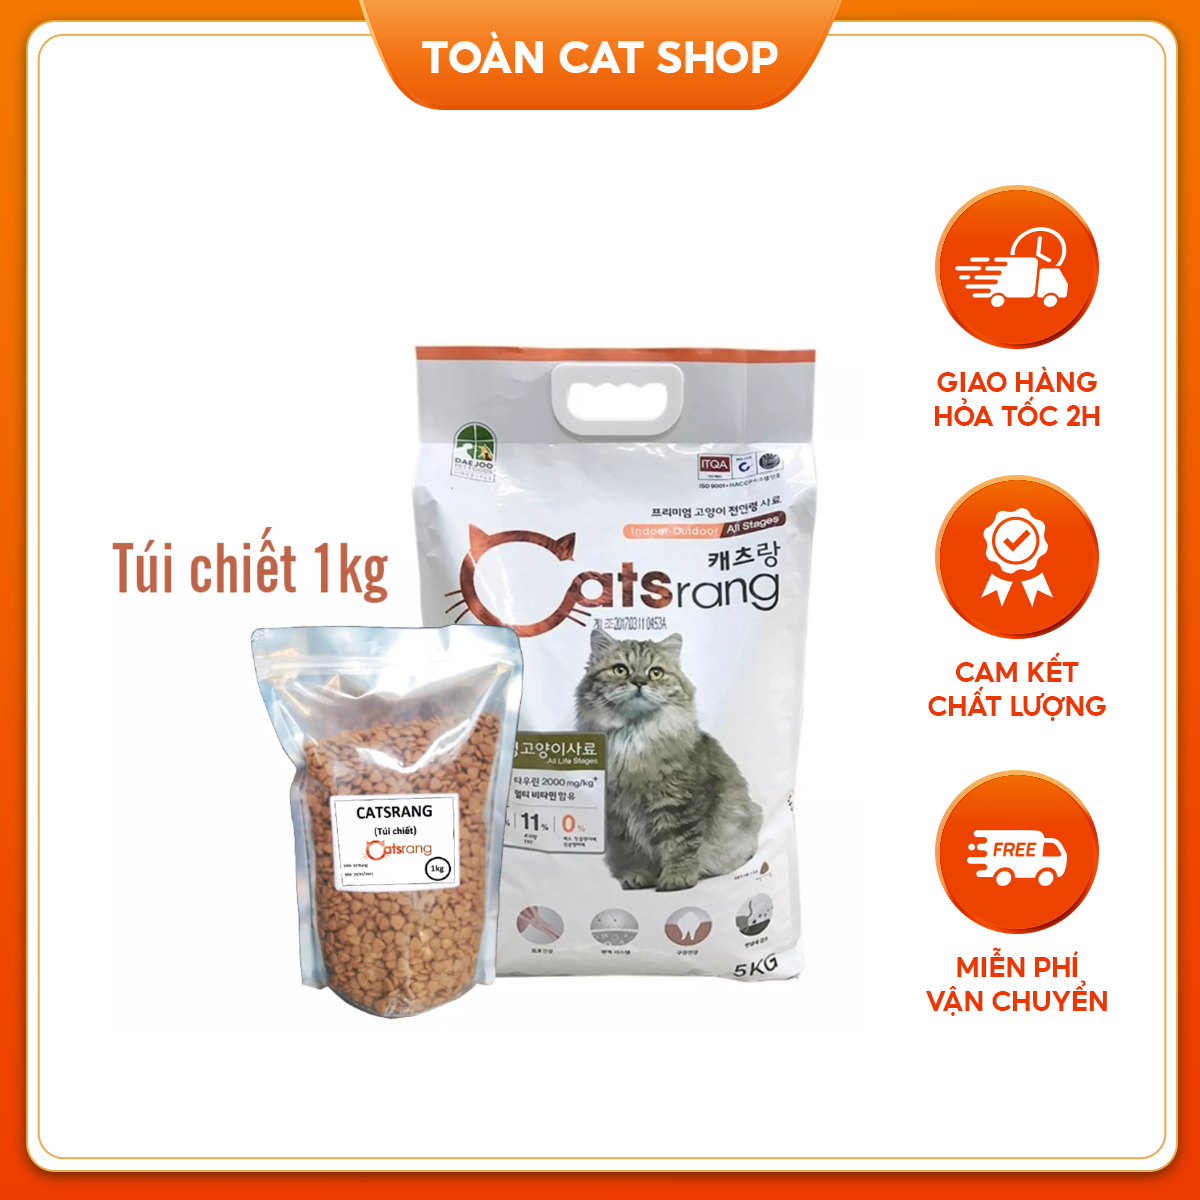 Thức Ăn Hạt Khô Cho Mèo Catsrang Túi Chiết 1kg, Hạt Thức Ăn Cho Mèo Thơm Ngon Hấp Dẫn